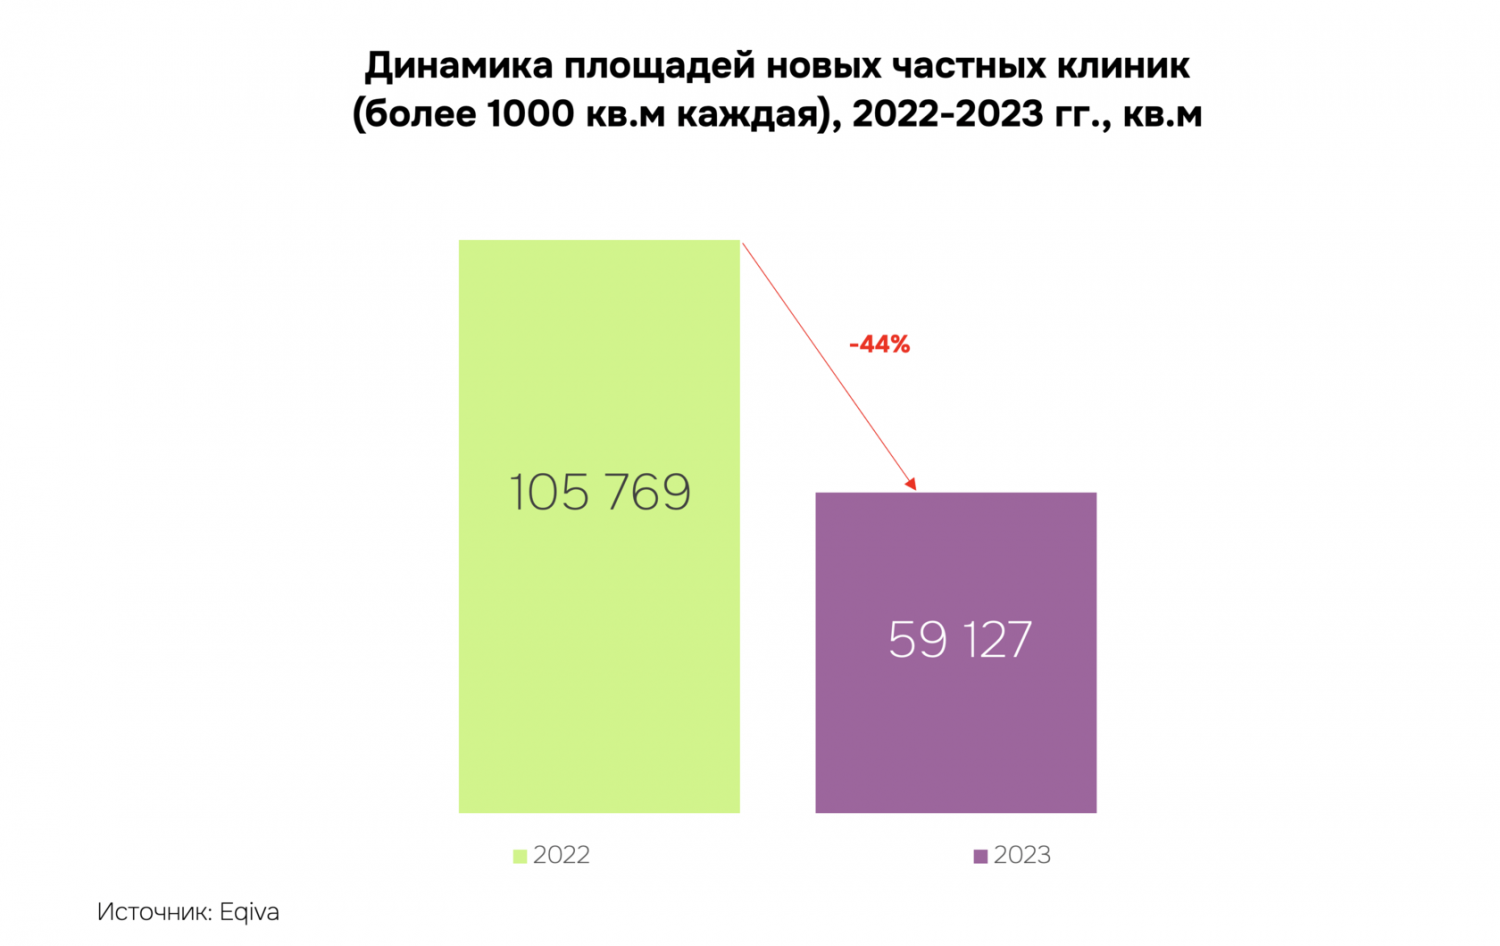 Мощности частных клиник в России увеличились за год на 59 тыс. кв. м.